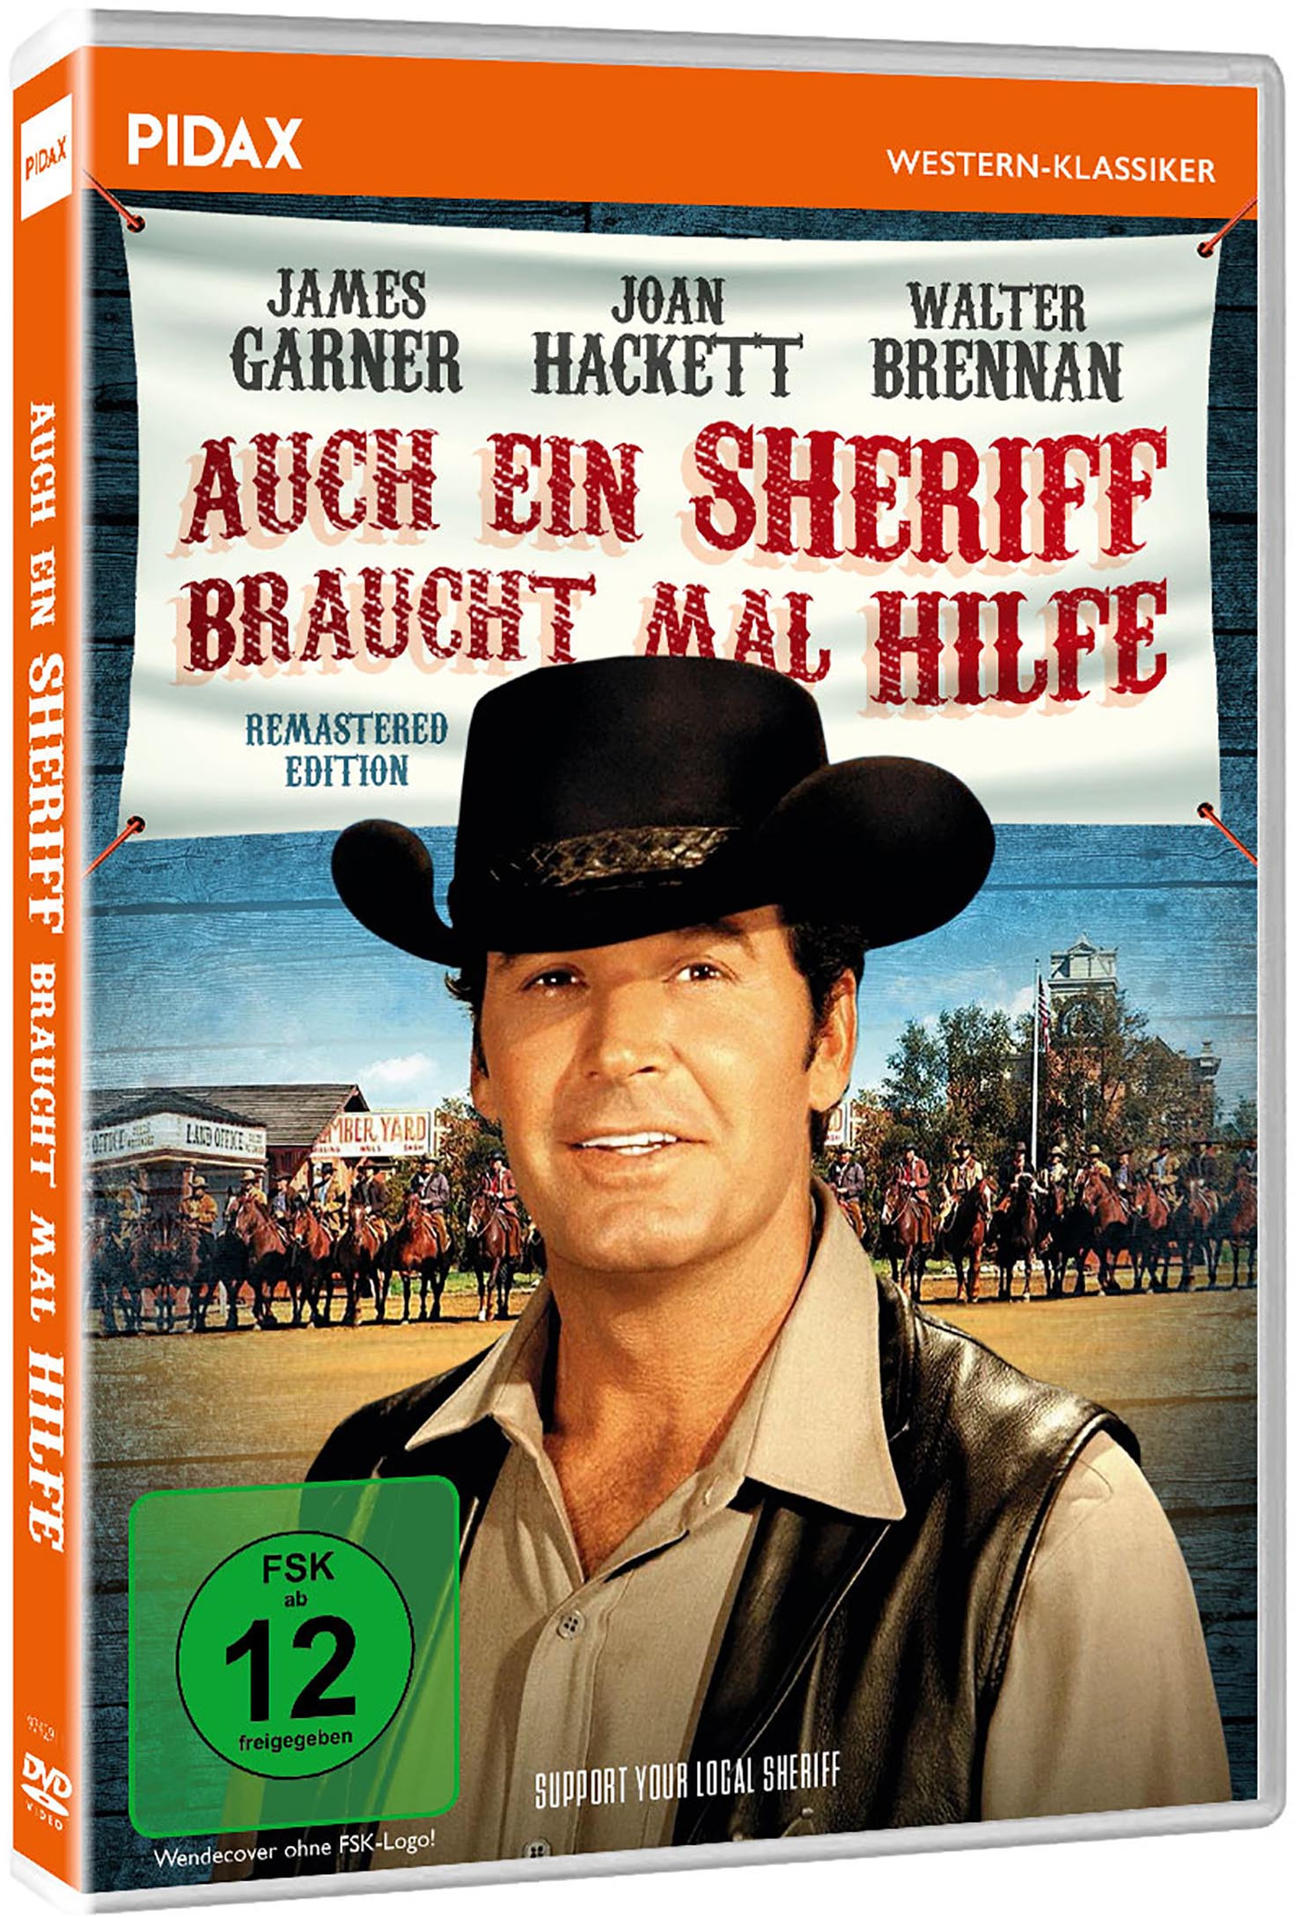 Auch ein DVD braucht Sheriff mal Hilfe